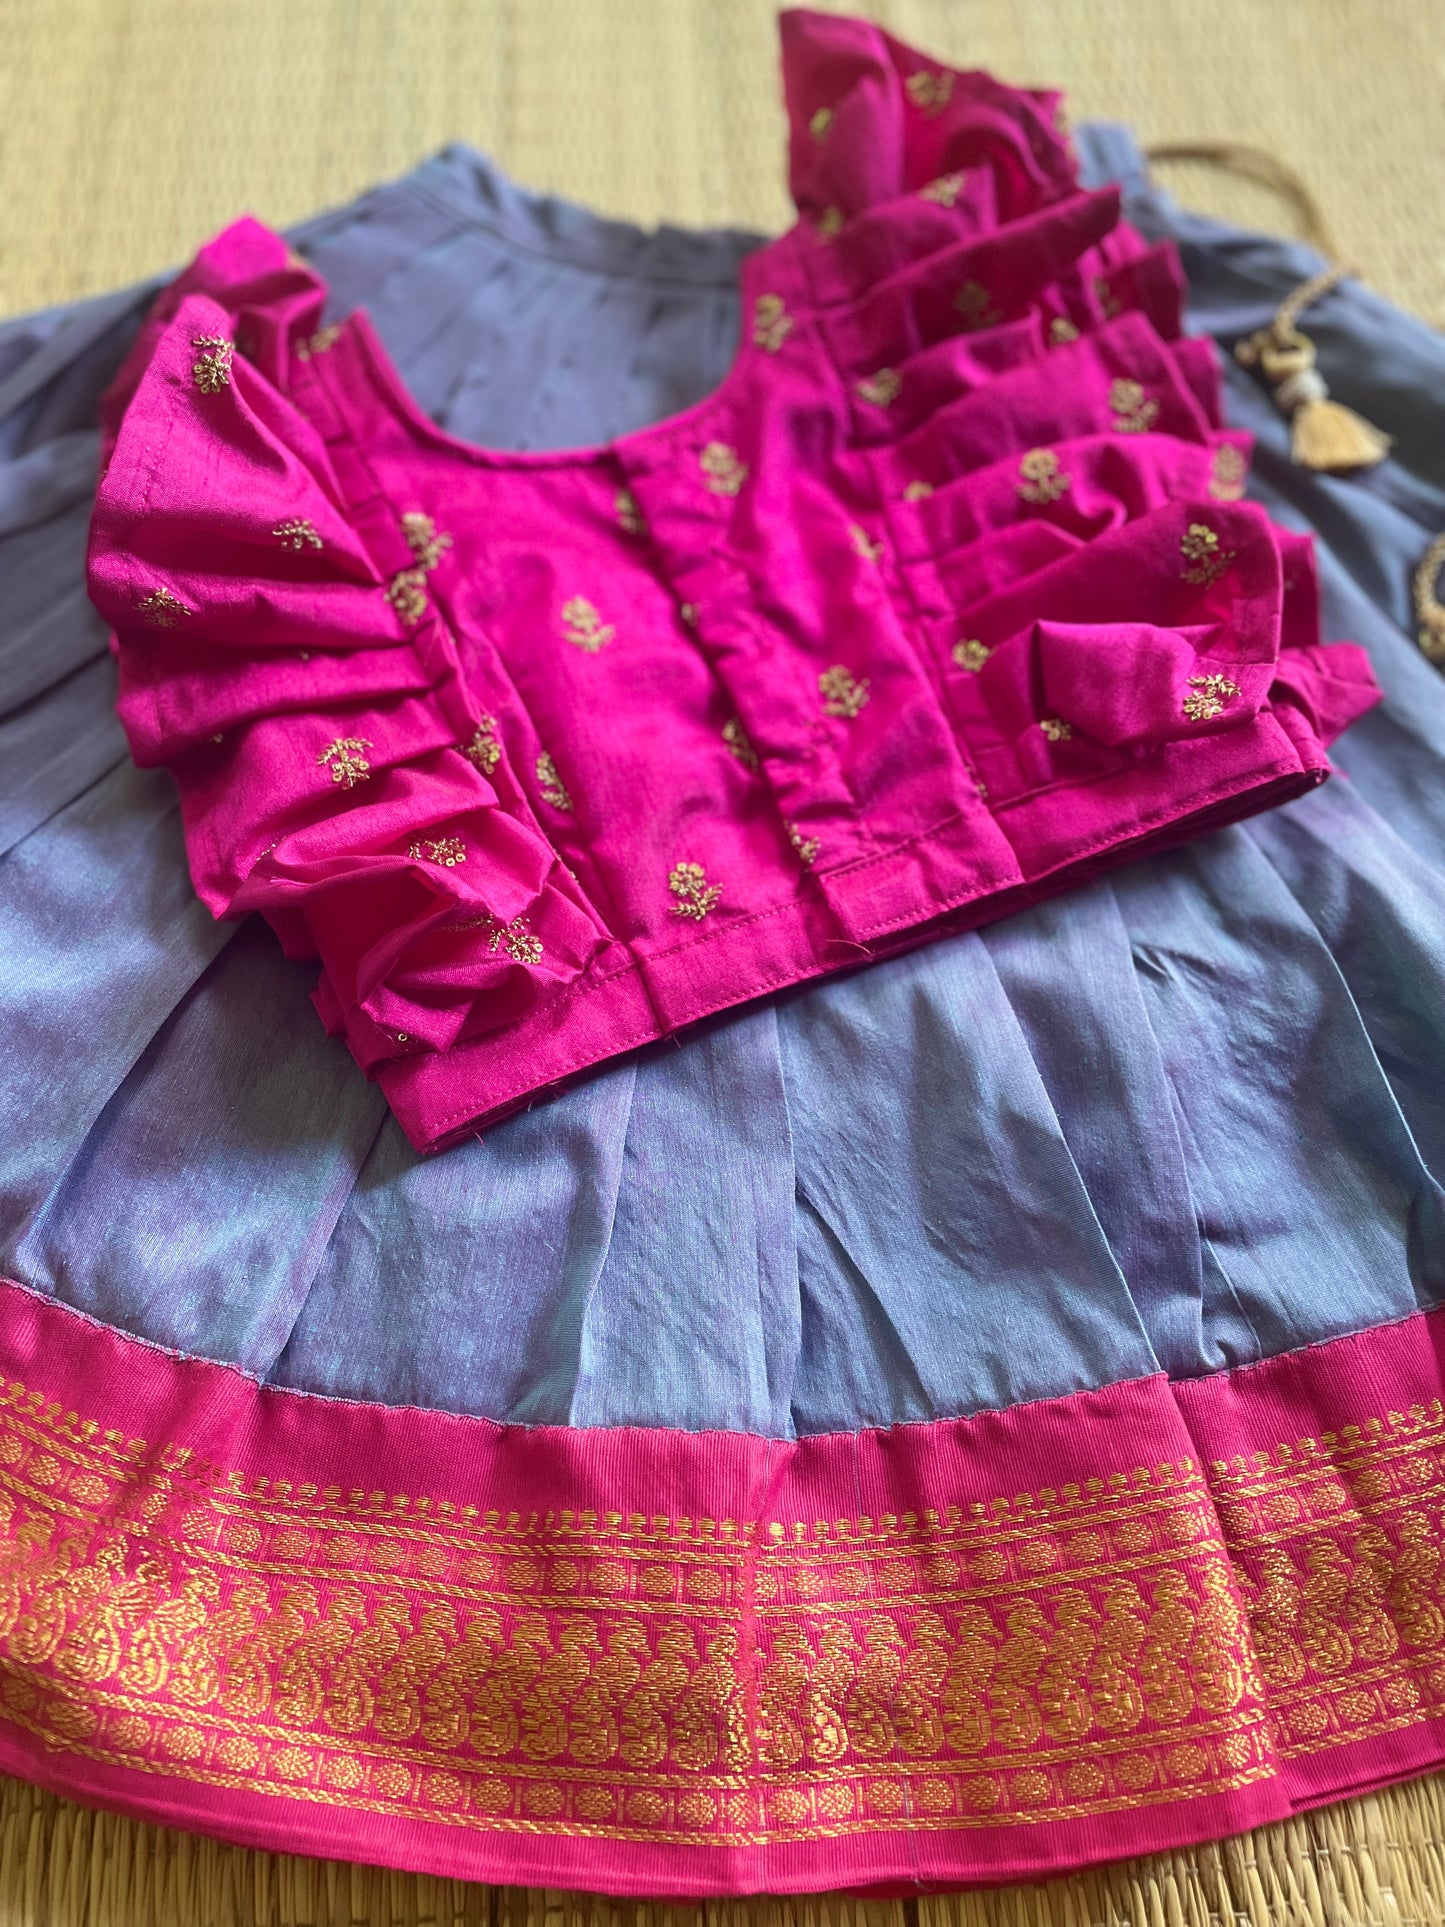 Hot pink ruffle sleeves blouse with unicorn langa - lehenga ethnic traditional wear for baby girl